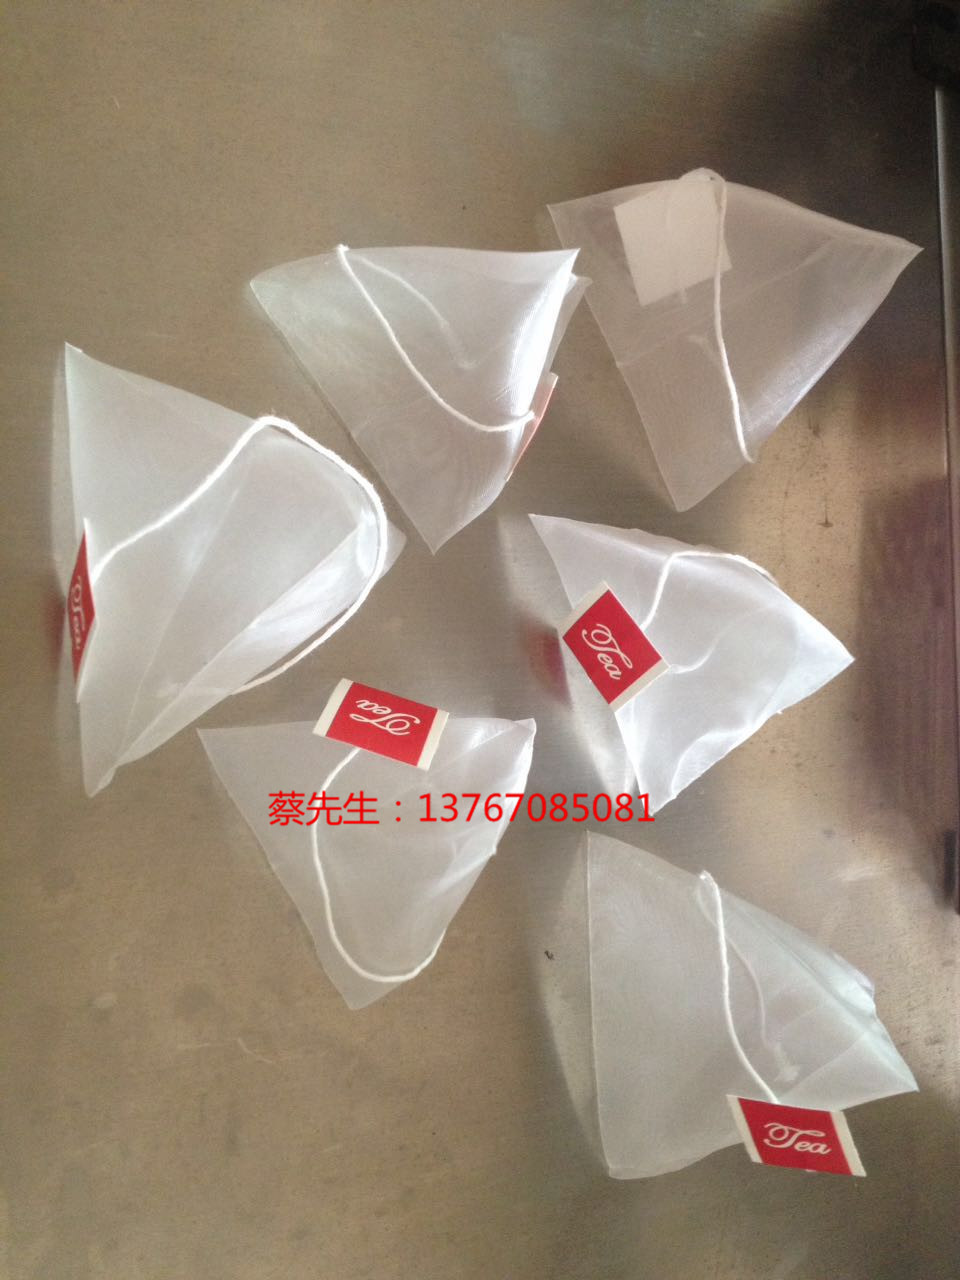 青海尼龙三角袋茶包 青尼龙三角袋包装机价格  青海尼龙三角袋包装机